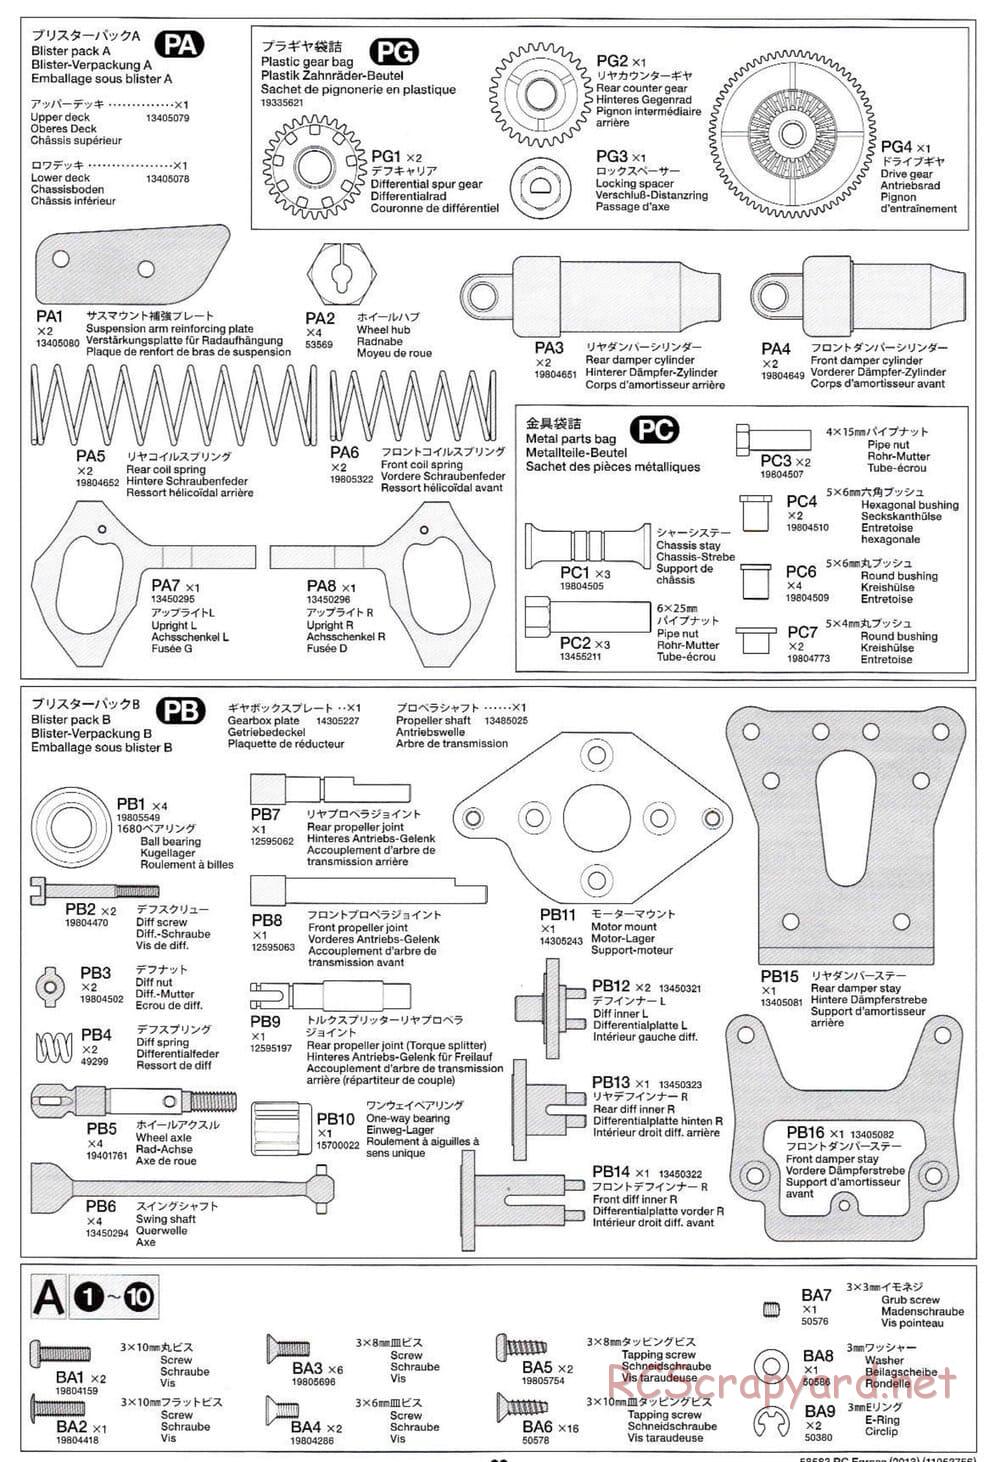 Tamiya - Egress 2013 - AV Chassis - Manual - Page 29